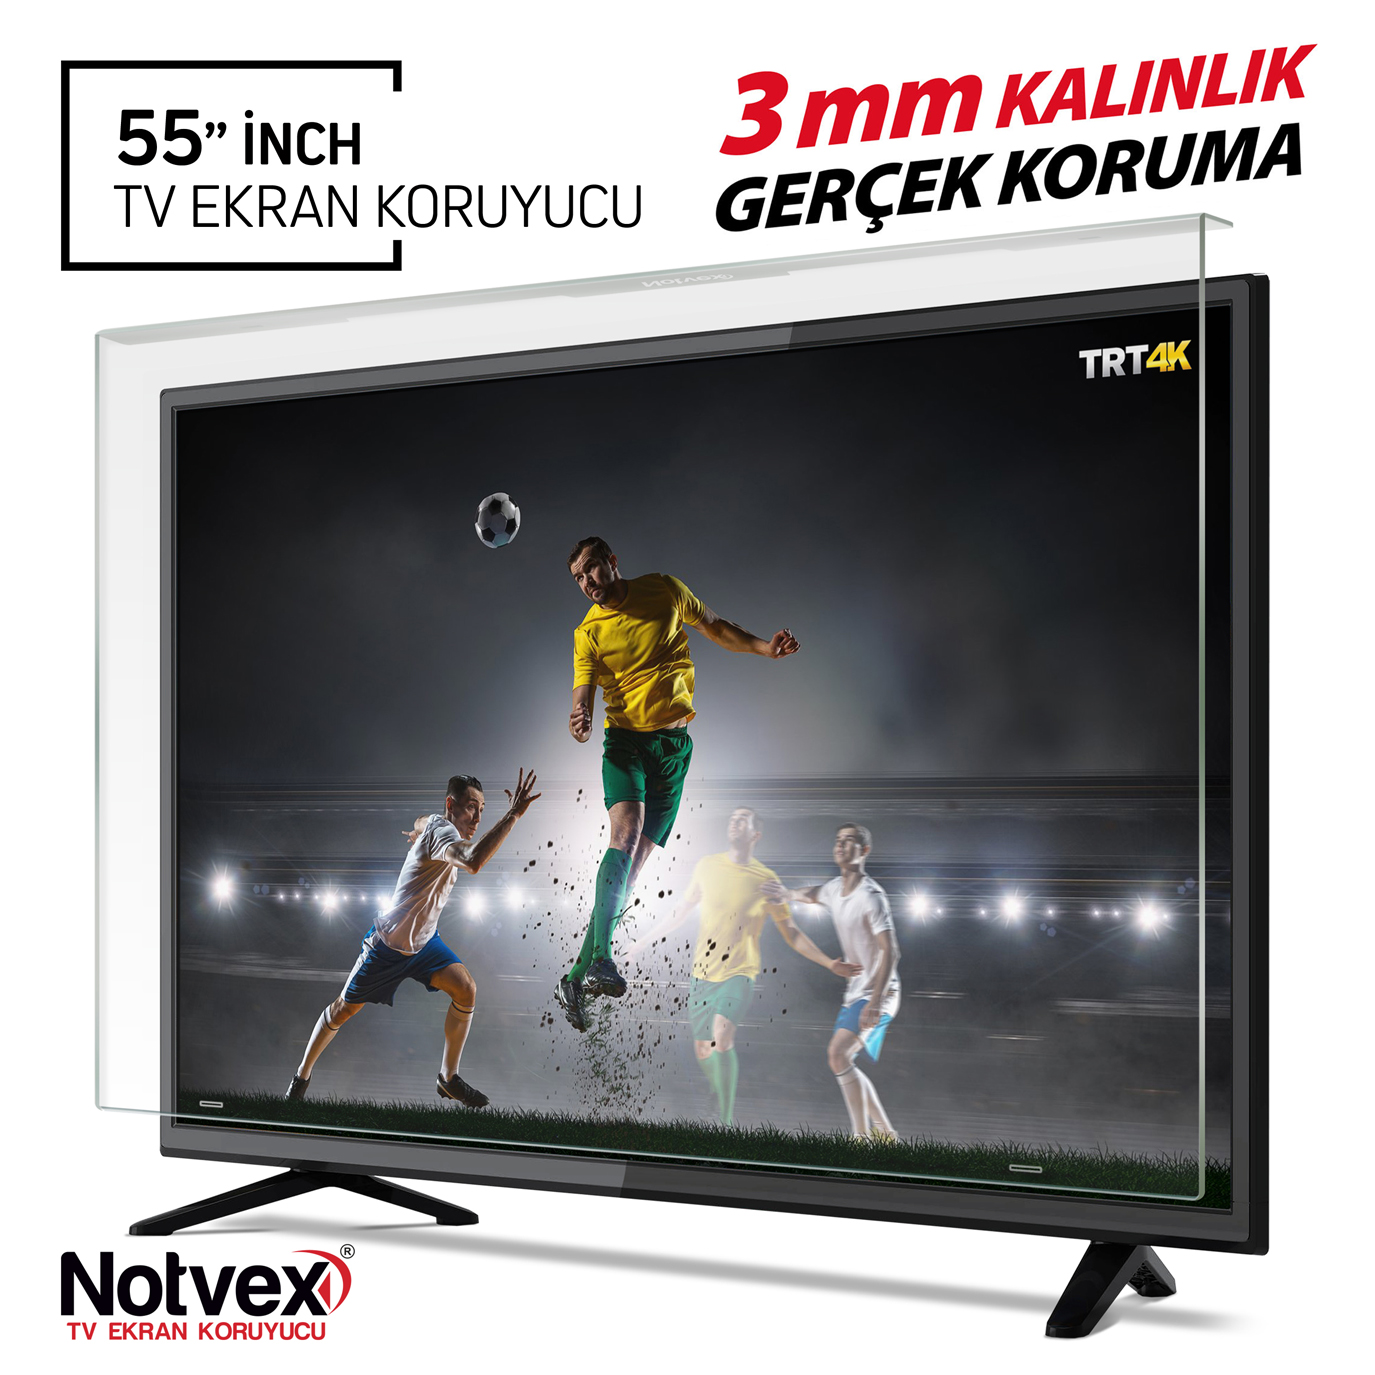 Notvex 55 İnç 140 Ekran Tv Ekran Koruyucu / 3 MM Kalınlık